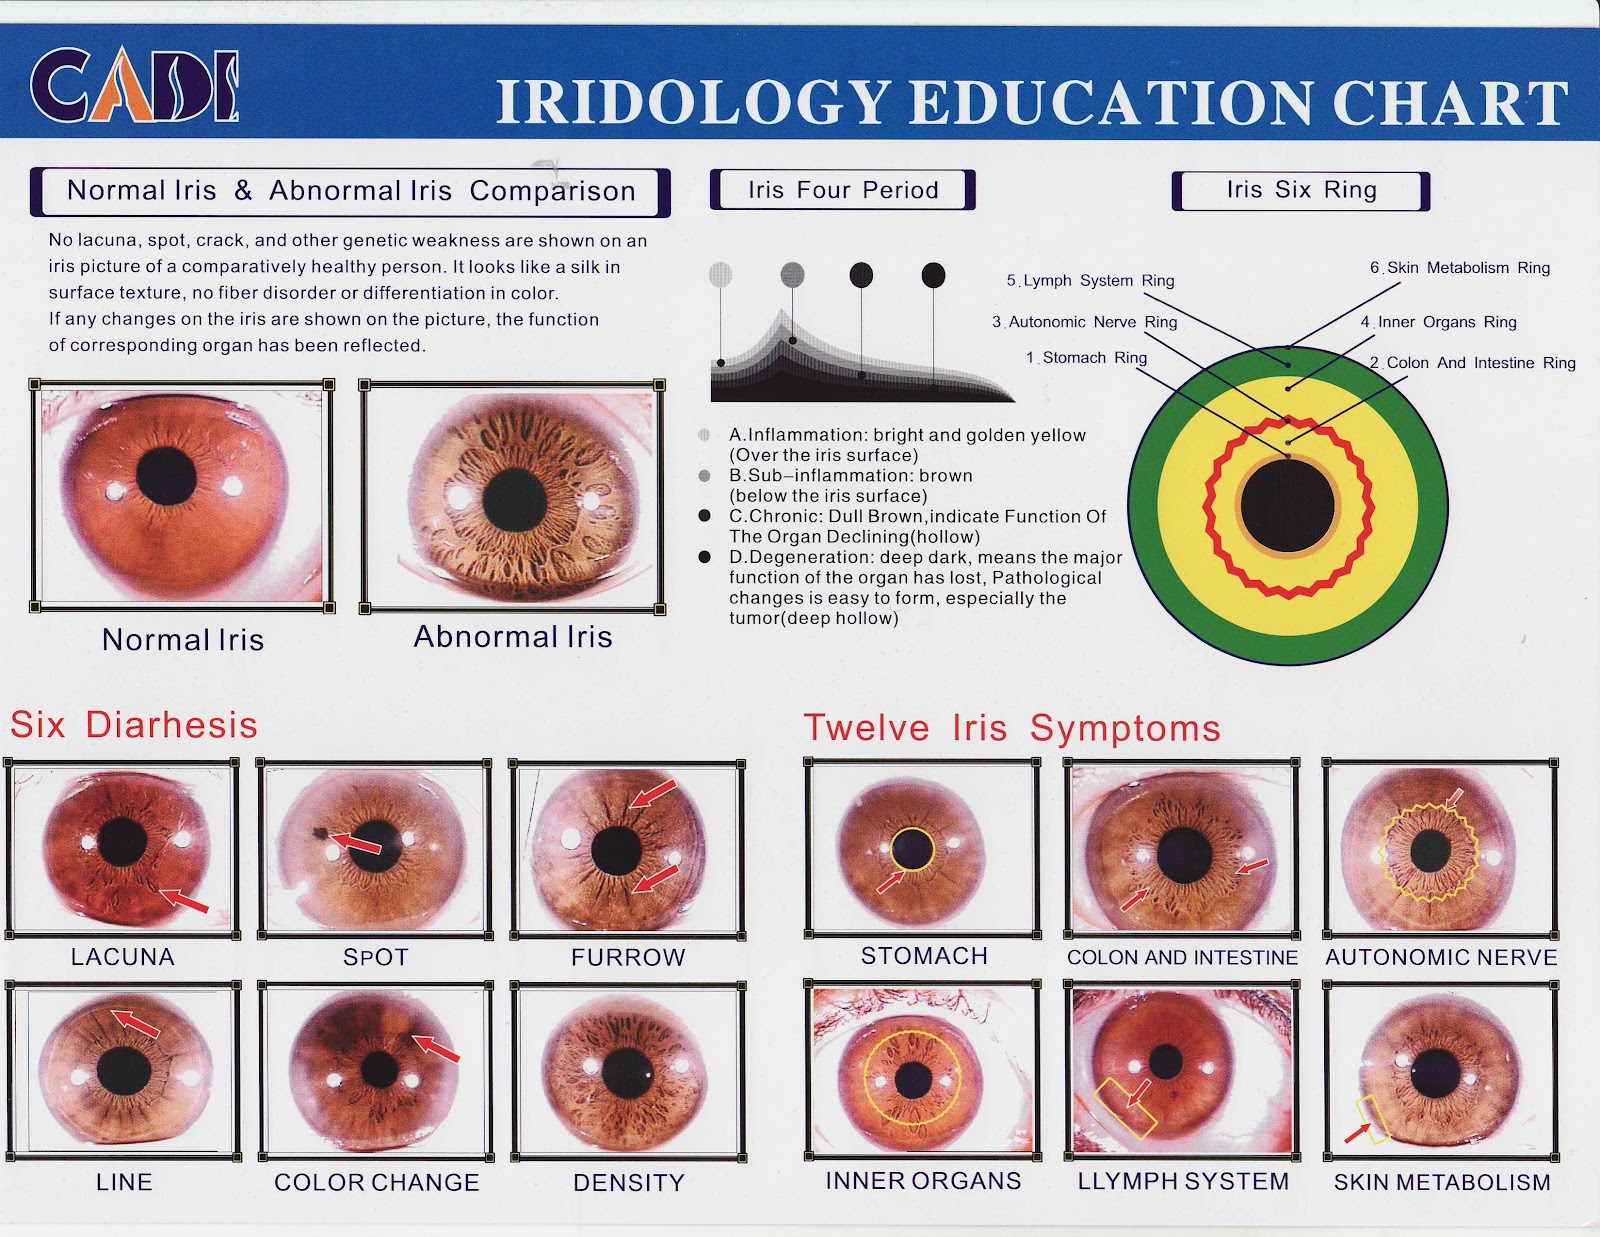 Iridology Chart Left Eye